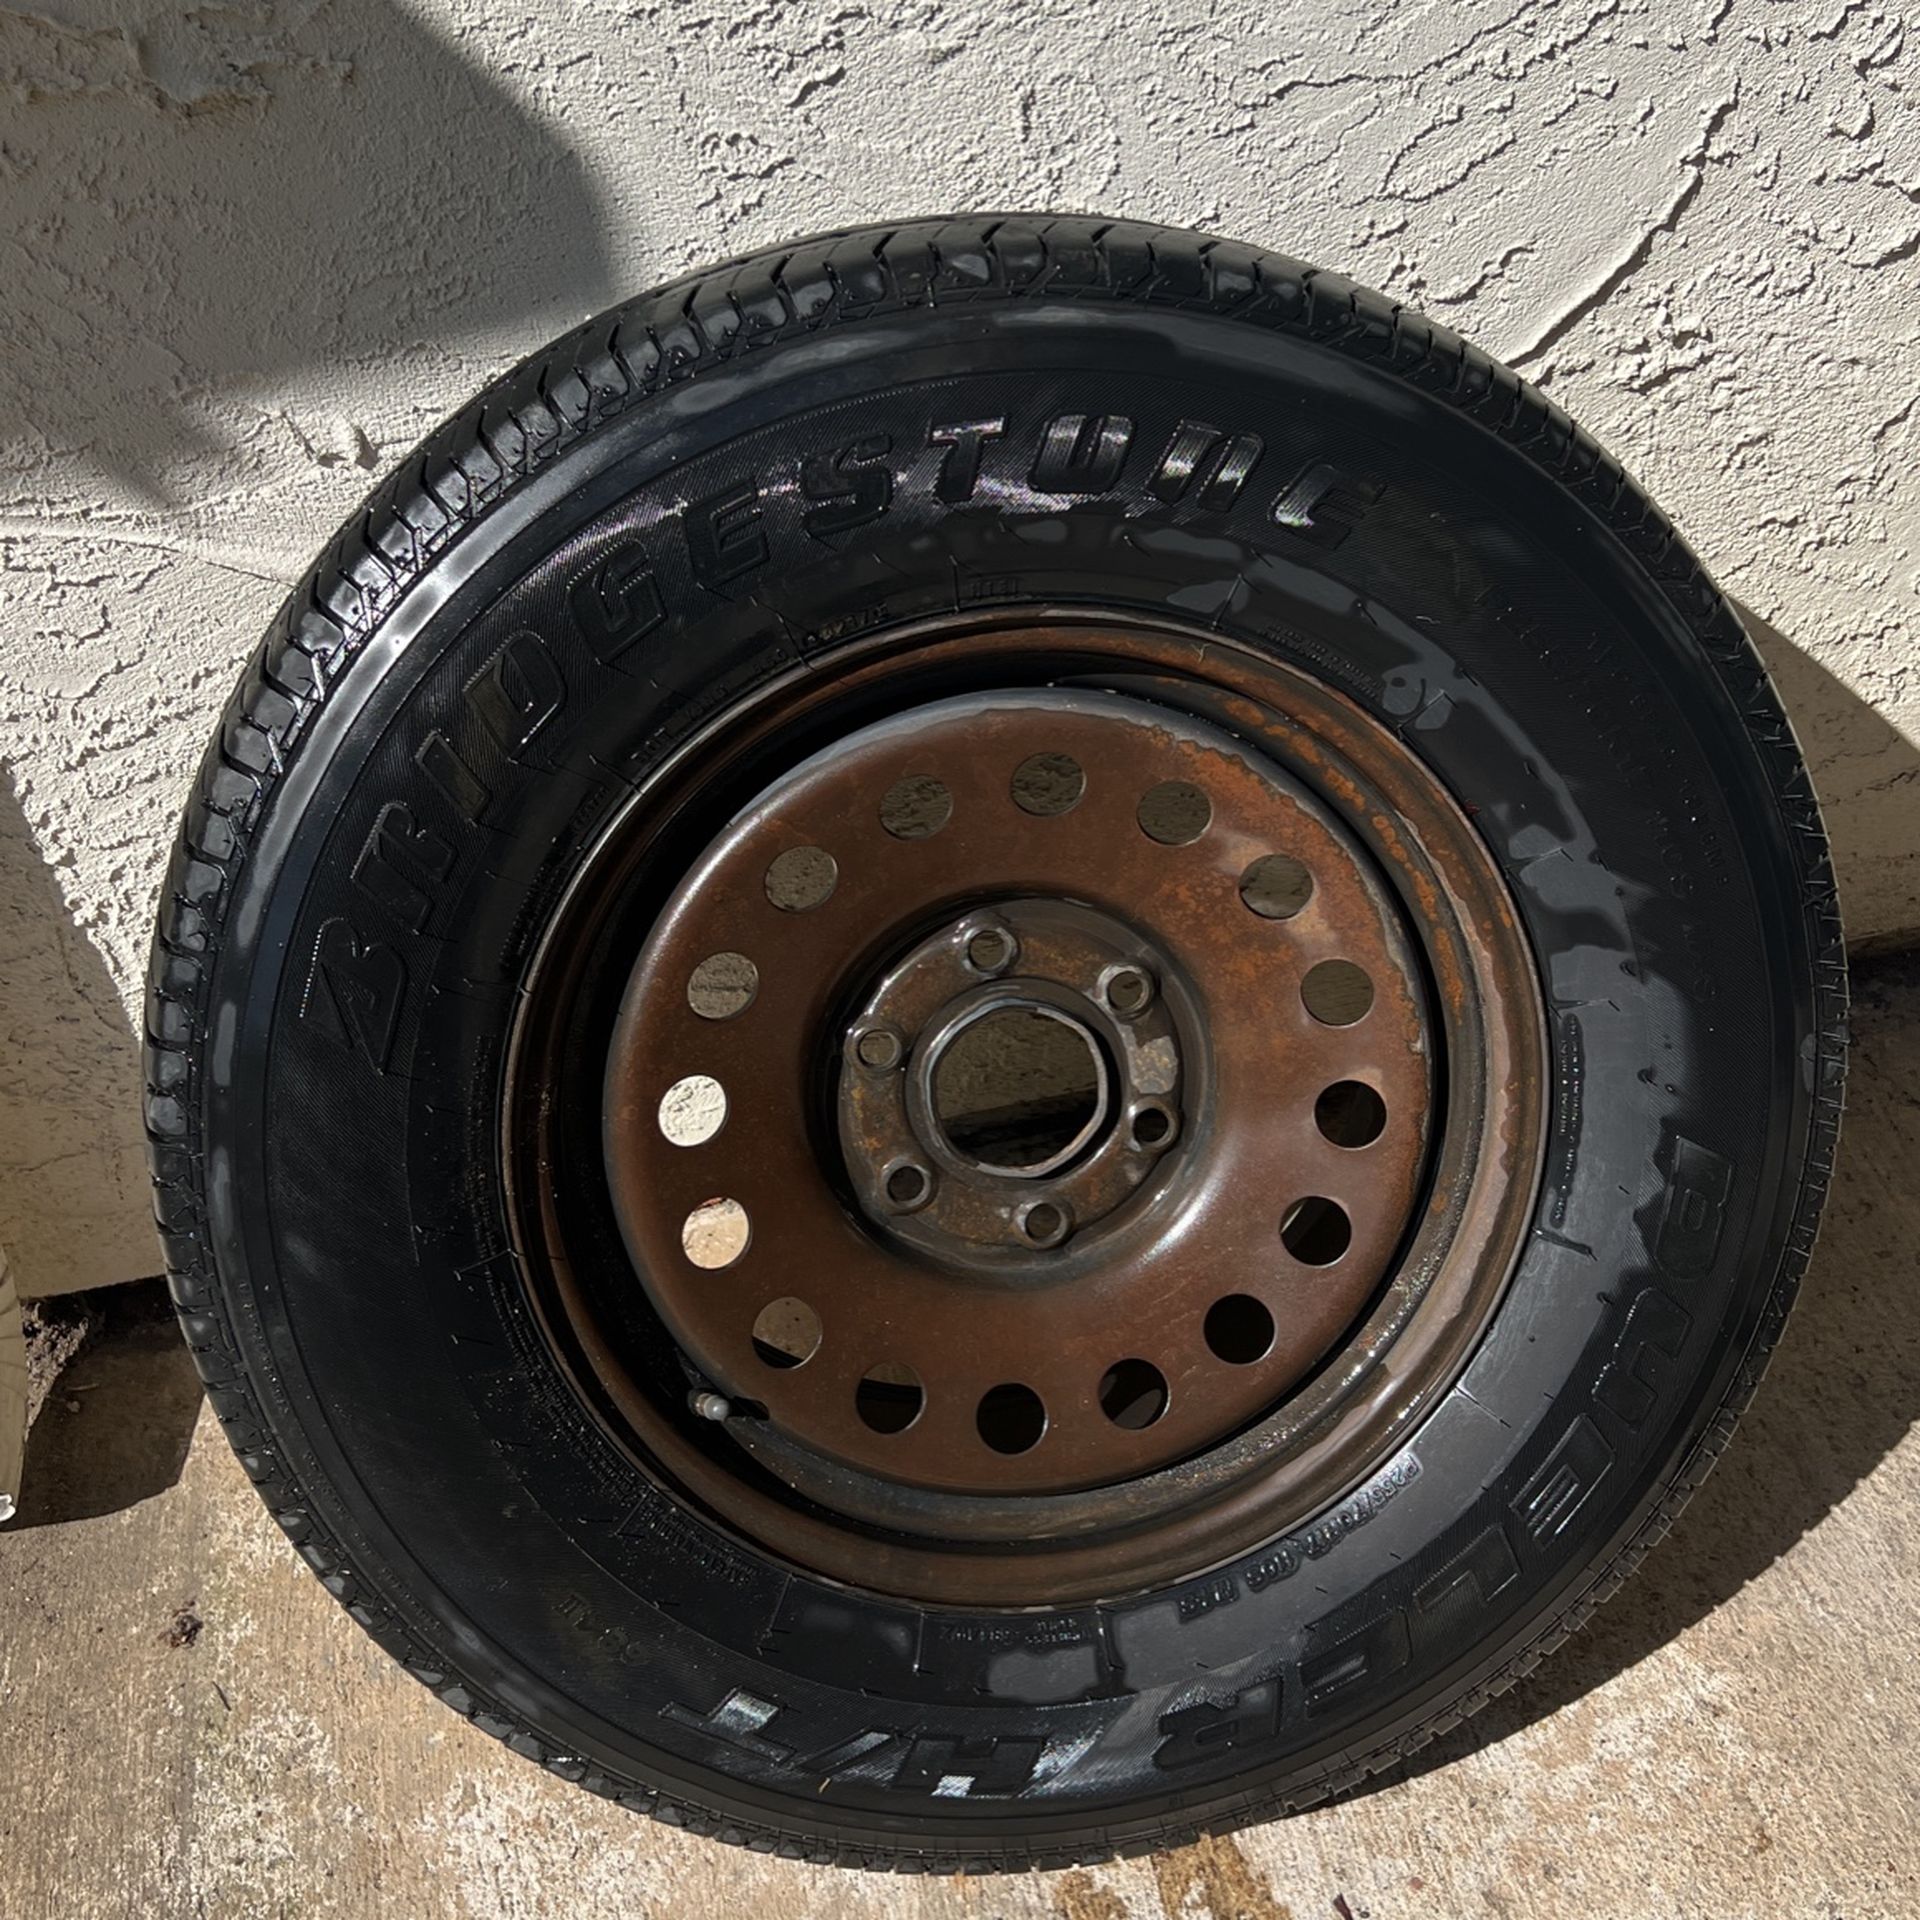 2018 Silverado Full Size Spare Tire